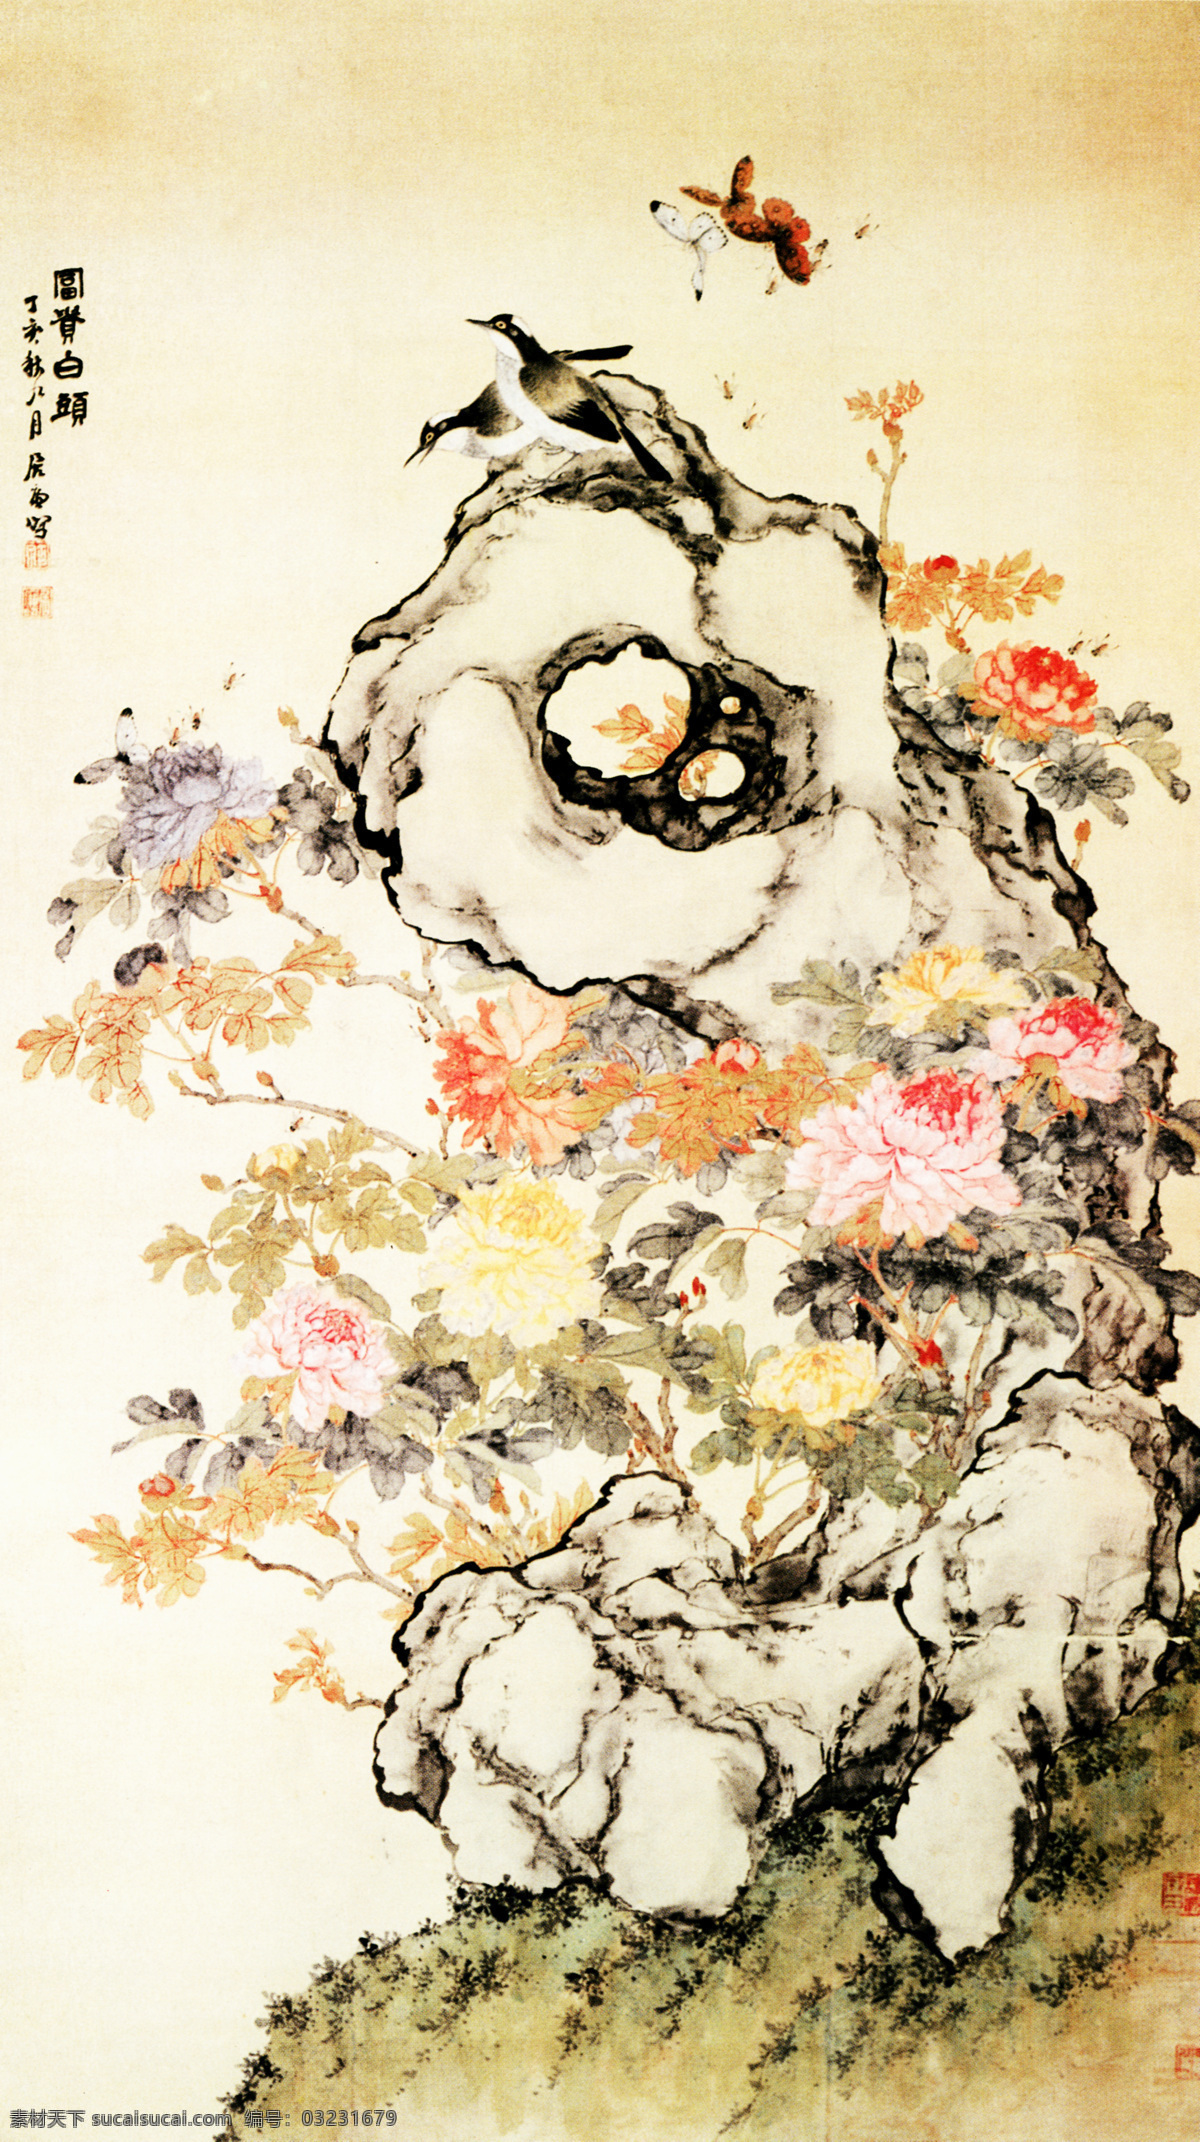 昆虫牡丹图 中国名画 古画 文化艺术 绘画书法 设计图库